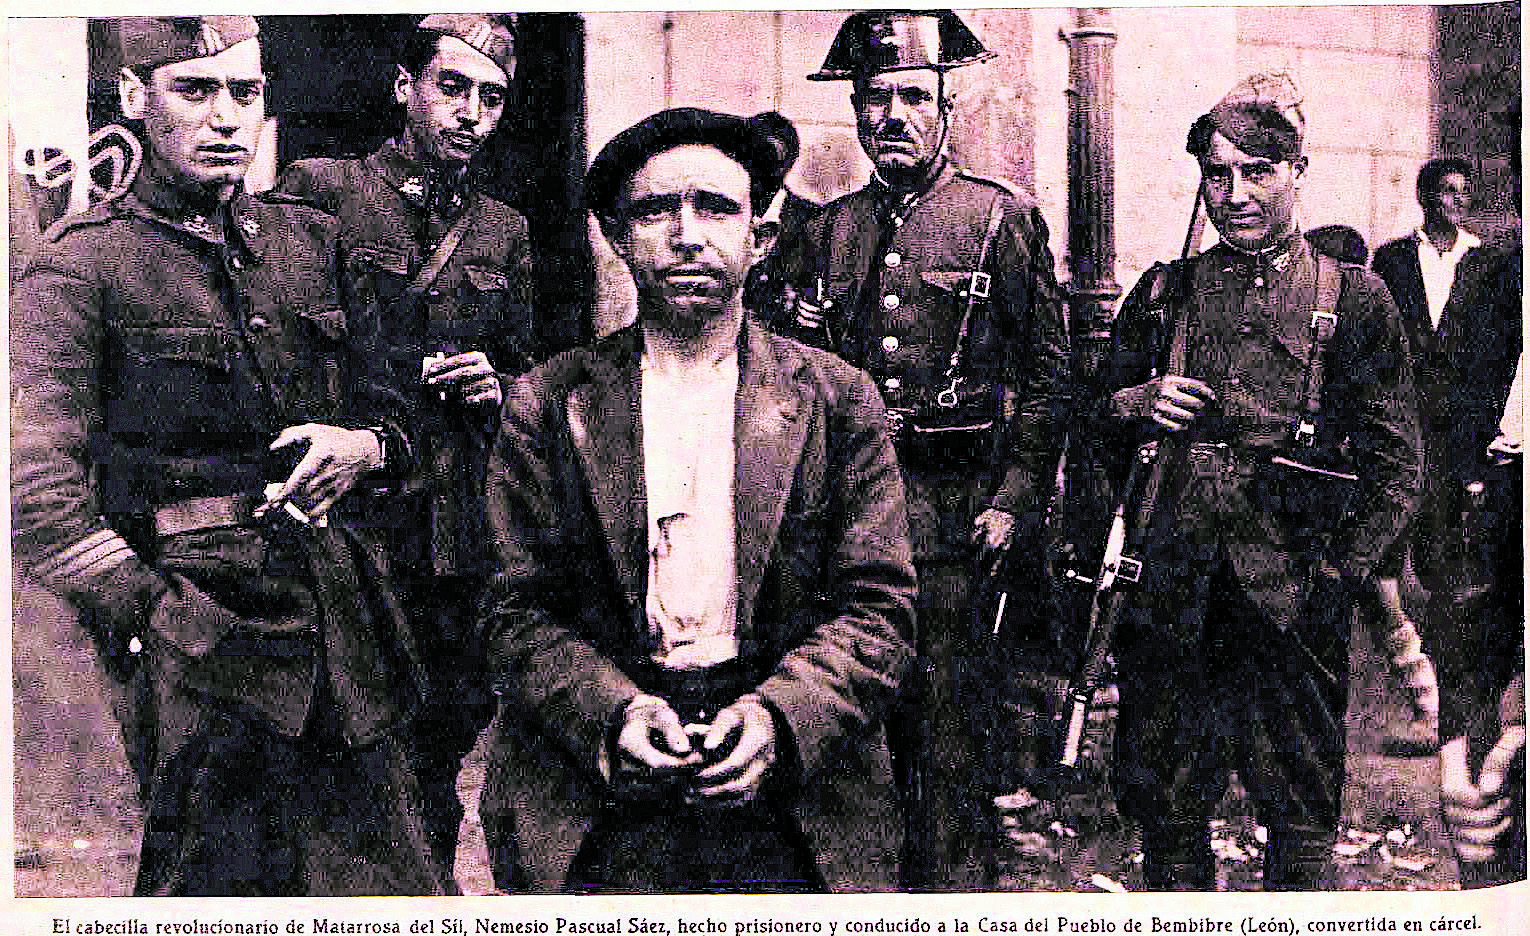 El cabecilla revolucionario de Matarrosa del Sil, Nemedio Pascual Sáez, hecho prisionero y conducido a la cárcel de Bembibre.